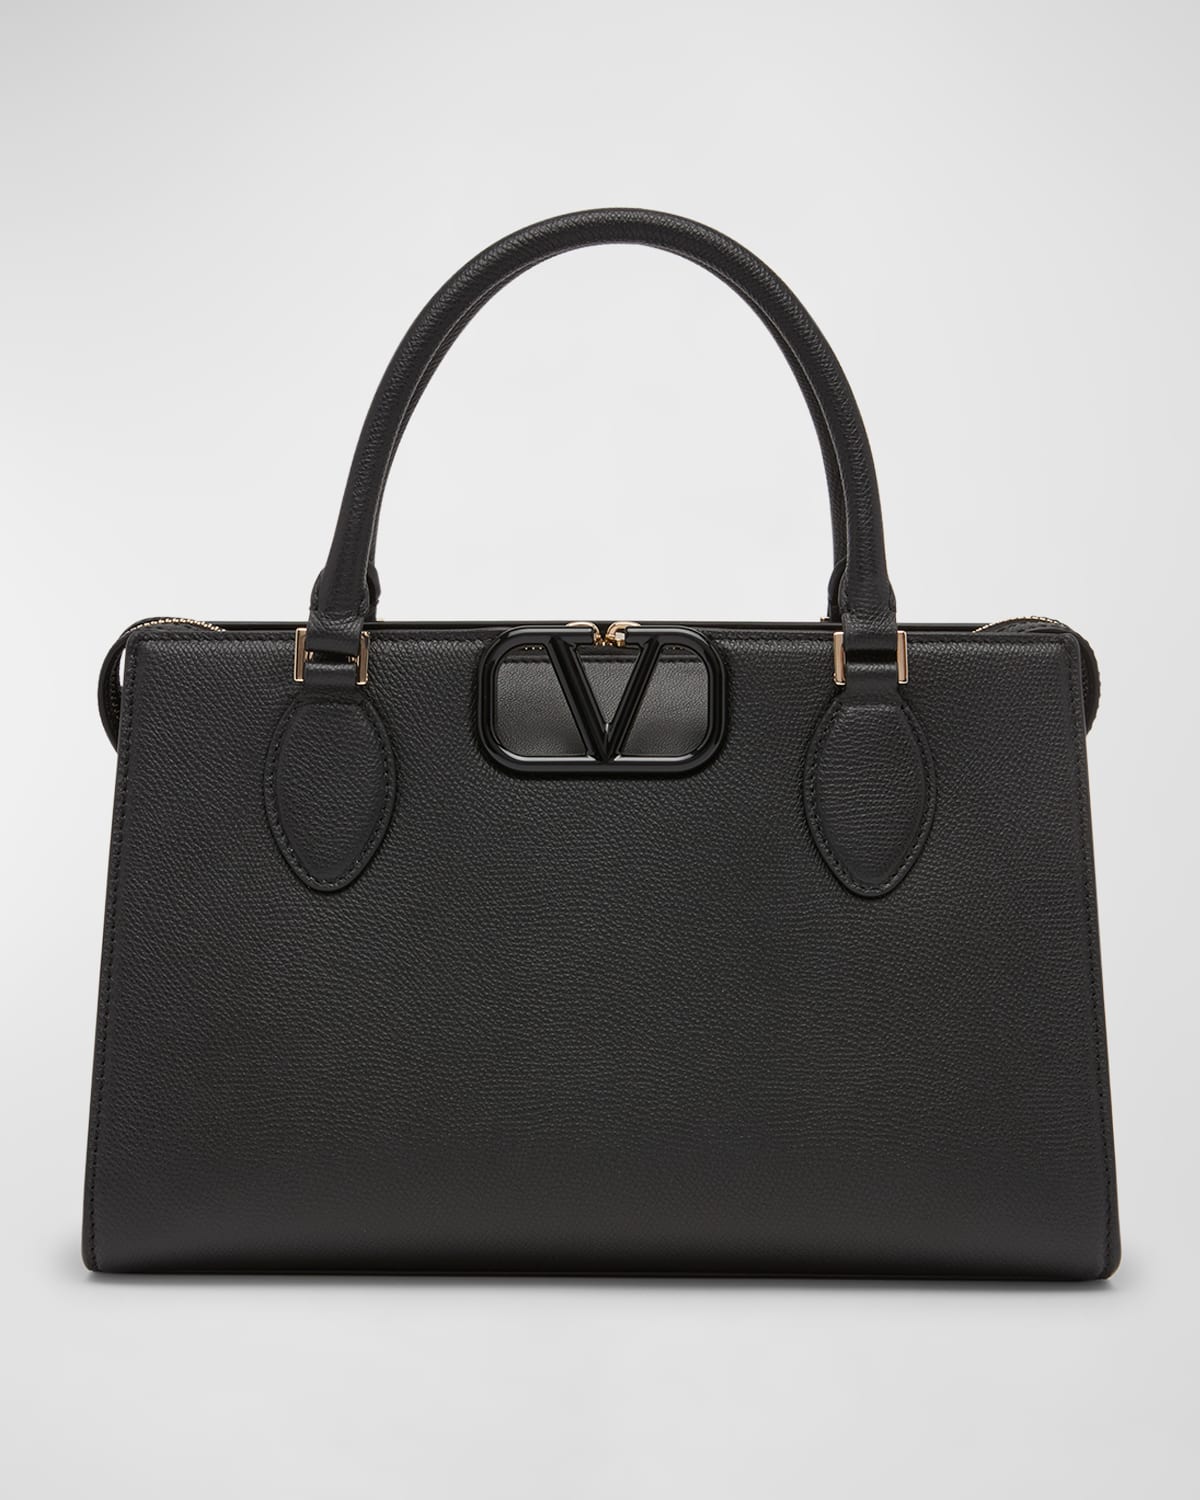 Vsling leather handbag Valentino Garavani Grey in Leather - 34814635